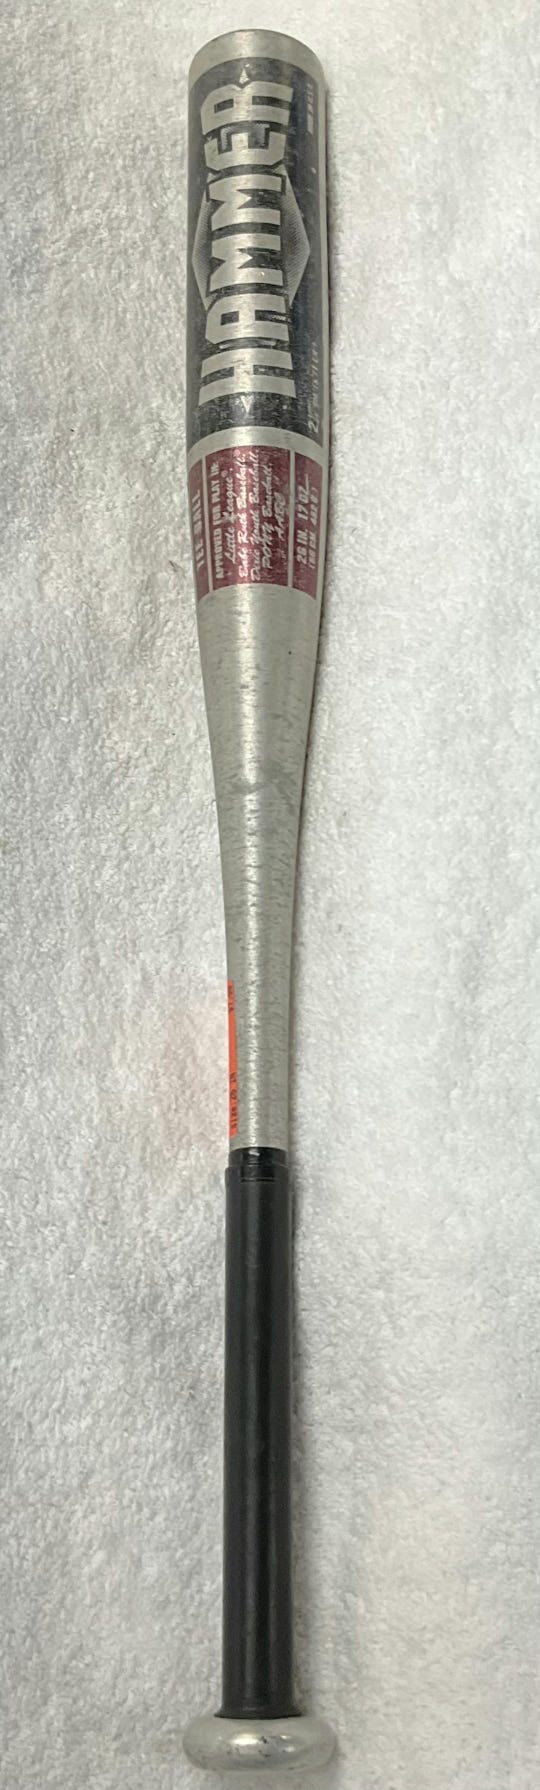 Used Easton Hammer Tk90 26" -9 Drop Tee Ball Bats